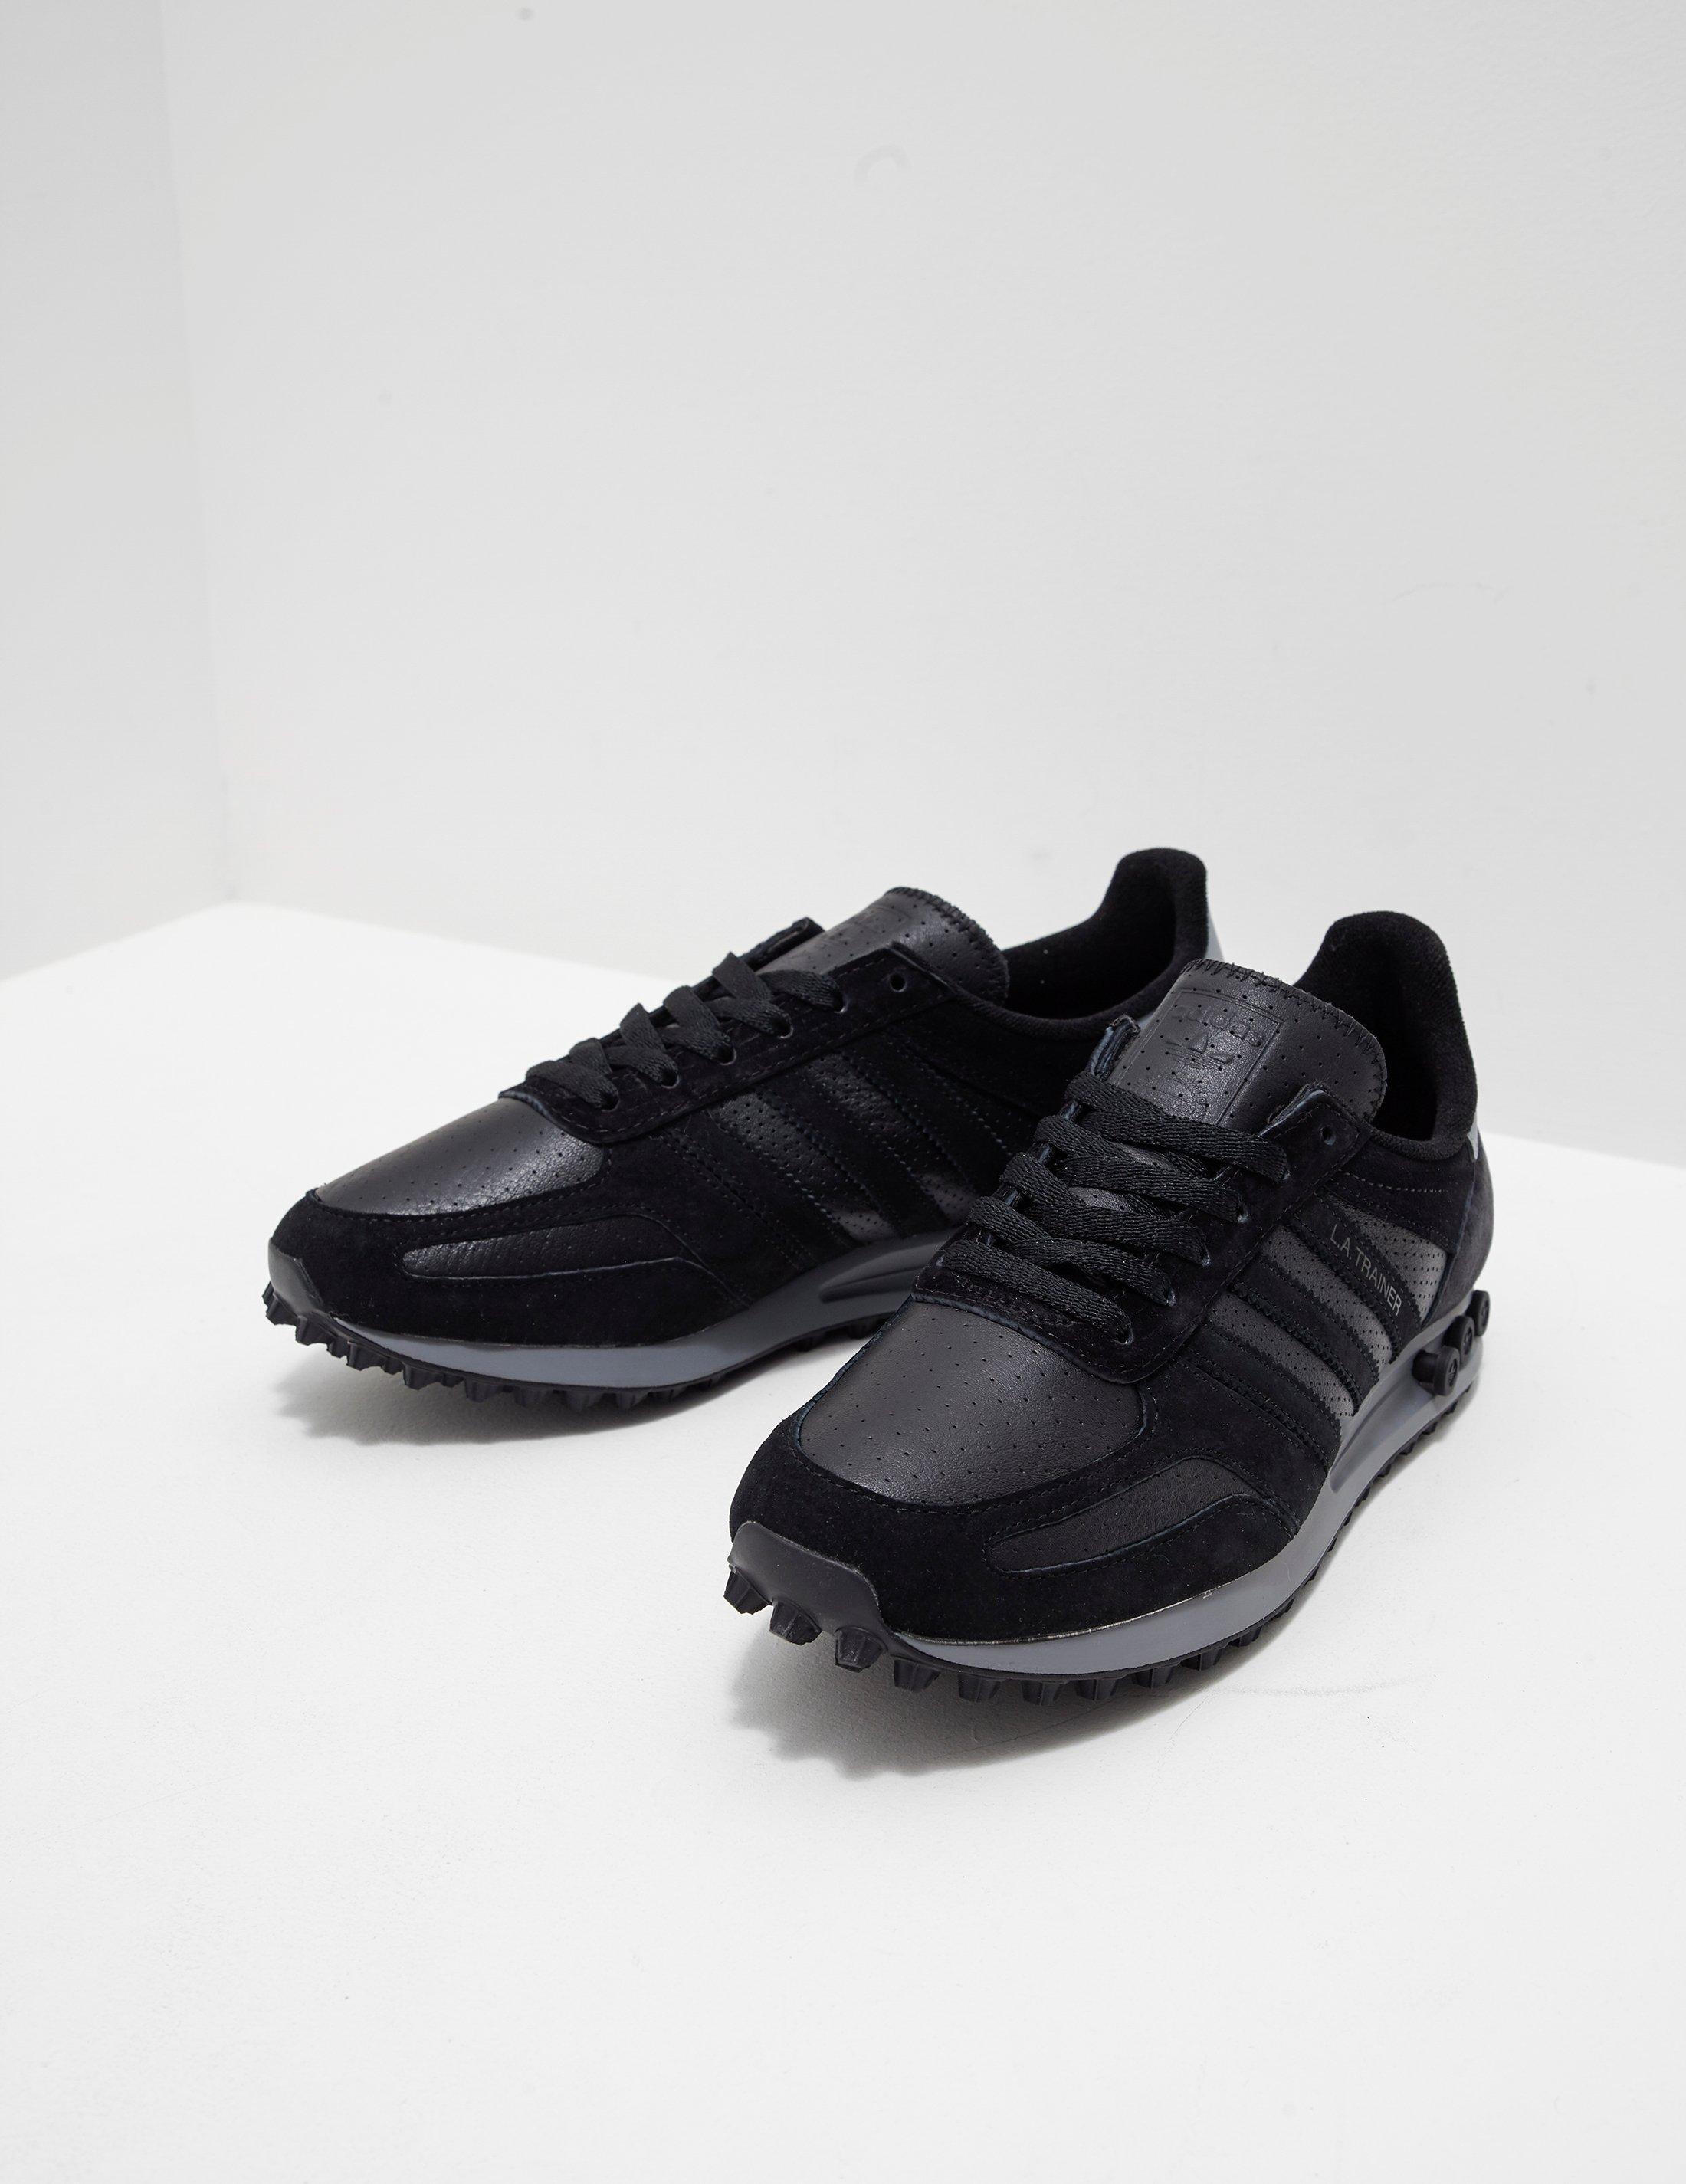 adidas Originals Mens La Trainer Leather Black for Men - Lyst